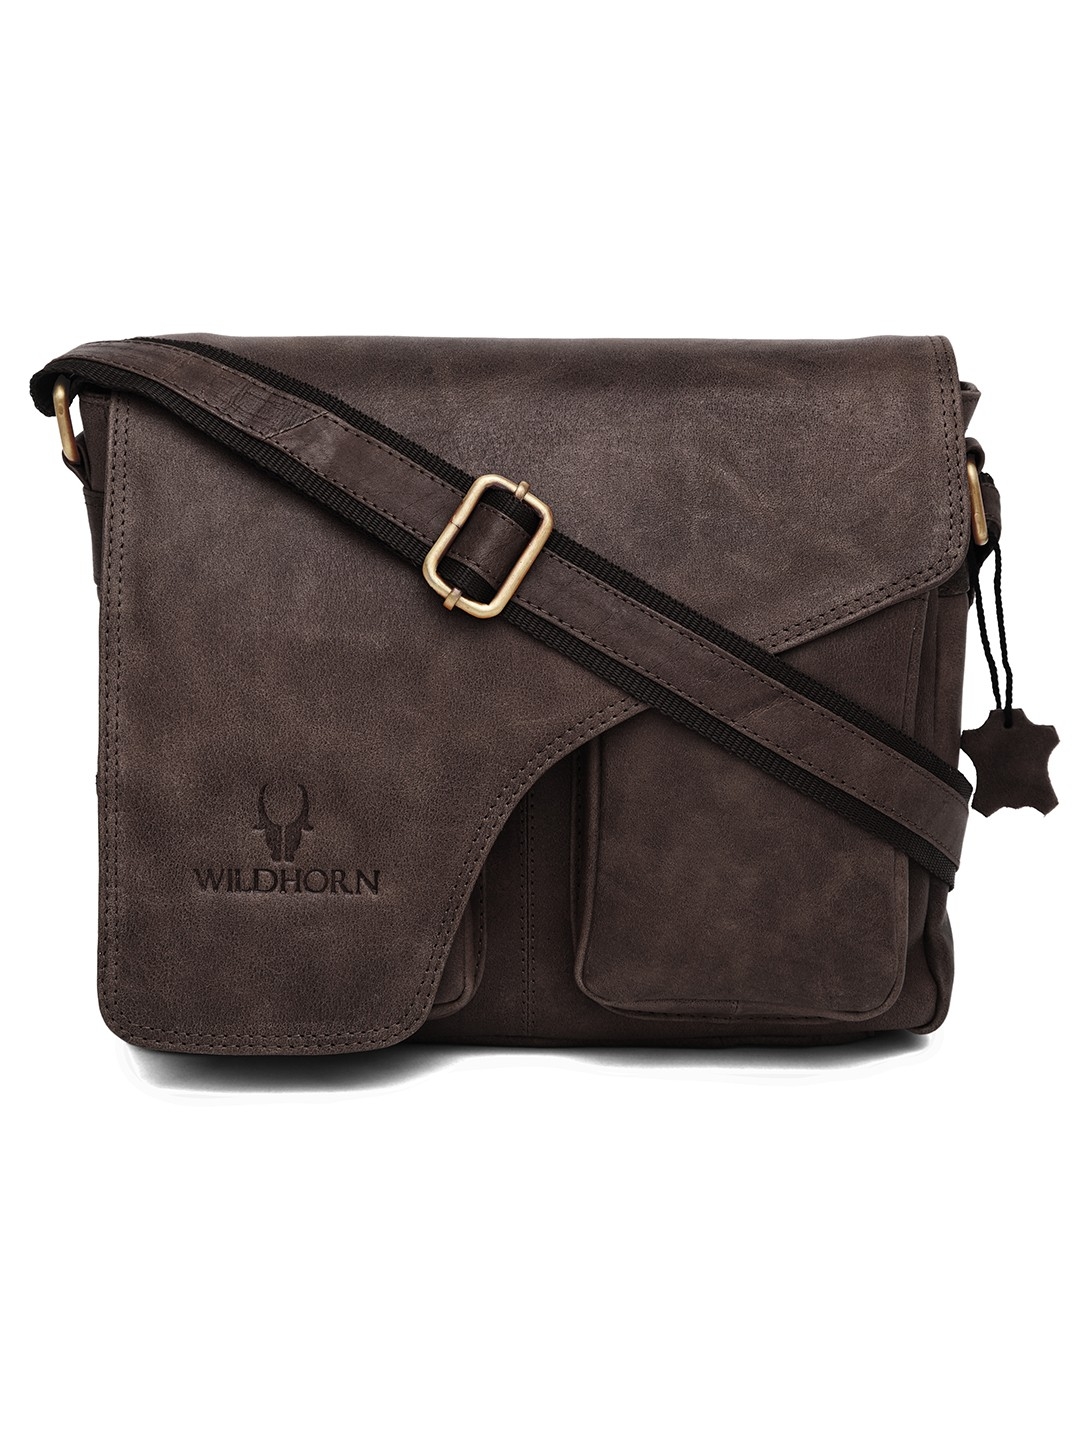 WildHorn | WildHorn Brown Classic Leather Adjustable Strap Messenger Bag for Men 